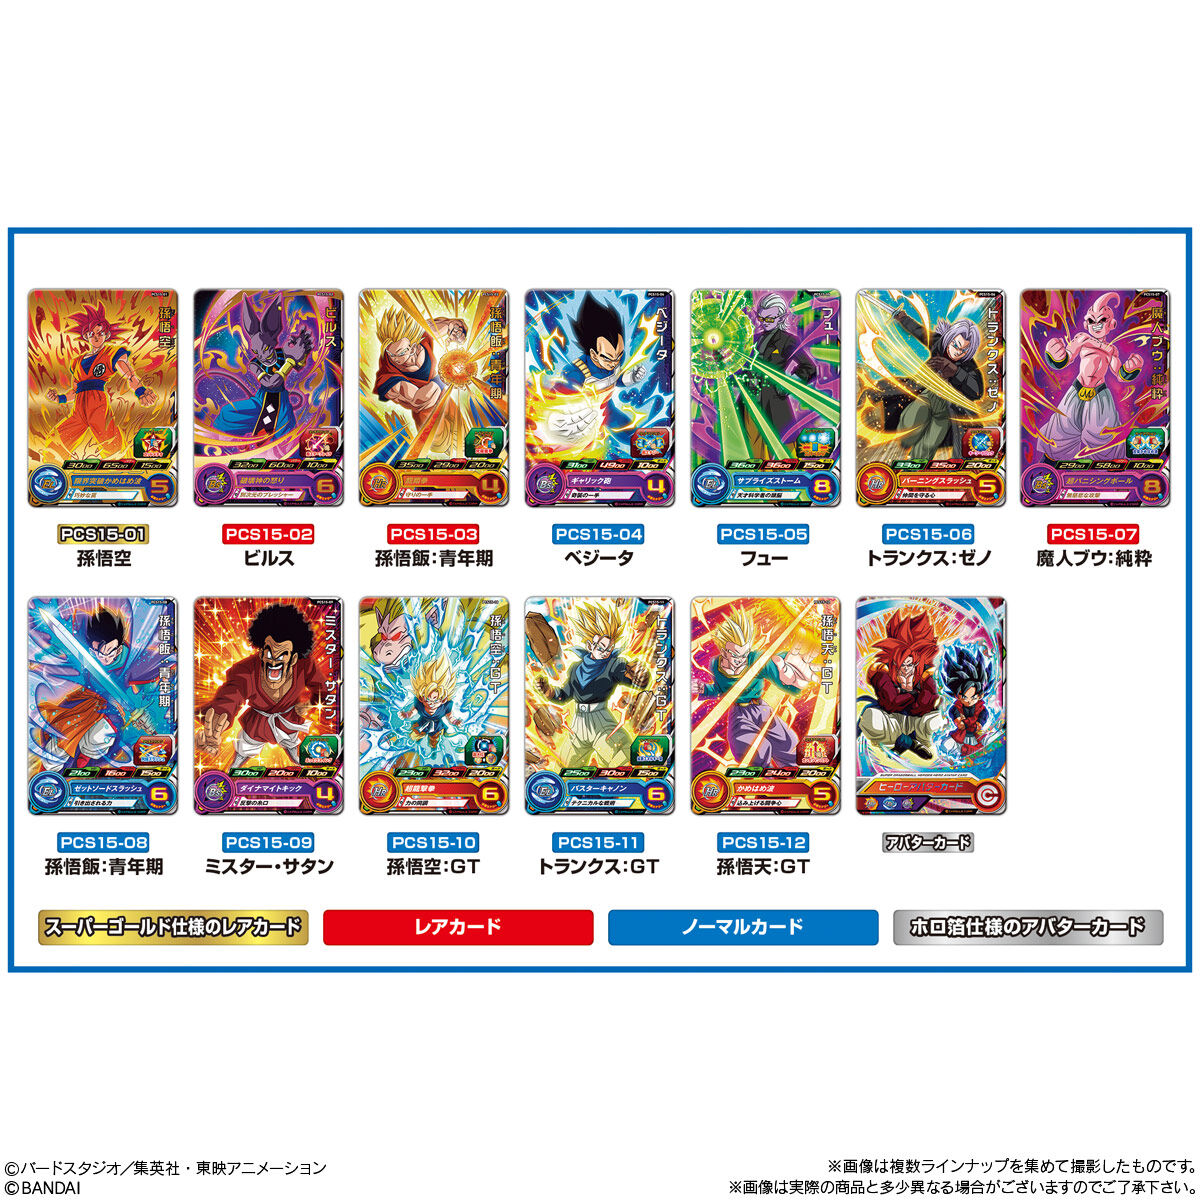 【食玩】ドラゴンボール『スーパードラゴンボールヒーローズ カードグミ15』20個入りBOX-006